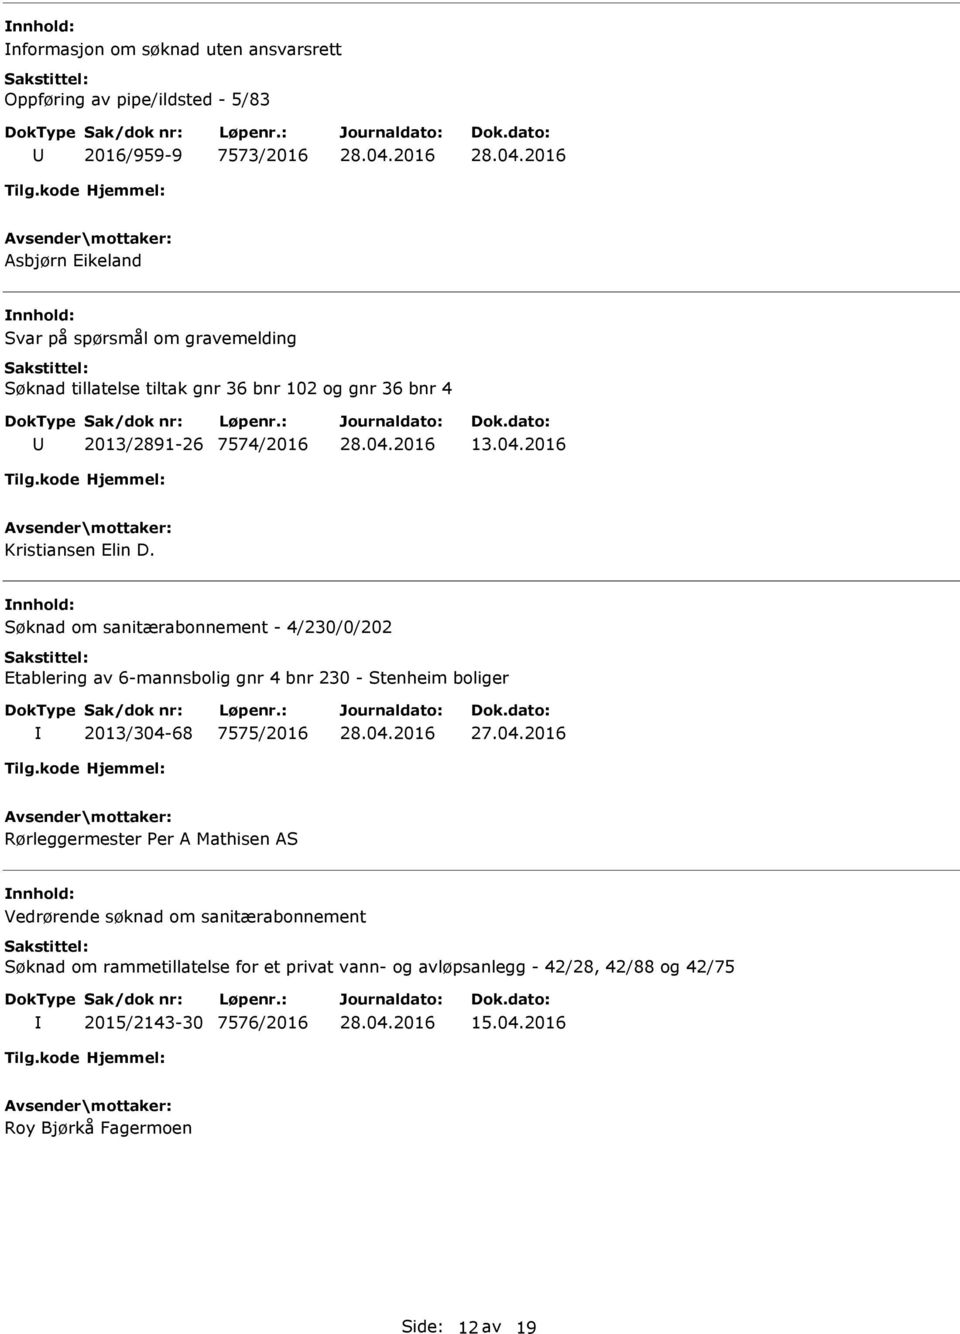 Søknad om sanitærabonnement - 4/230/0/202 Etablering av 6-mannsbolig gnr 4 bnr 230 - Stenheim boliger 2013/304-68 7575/2016 Rørleggermester Per A